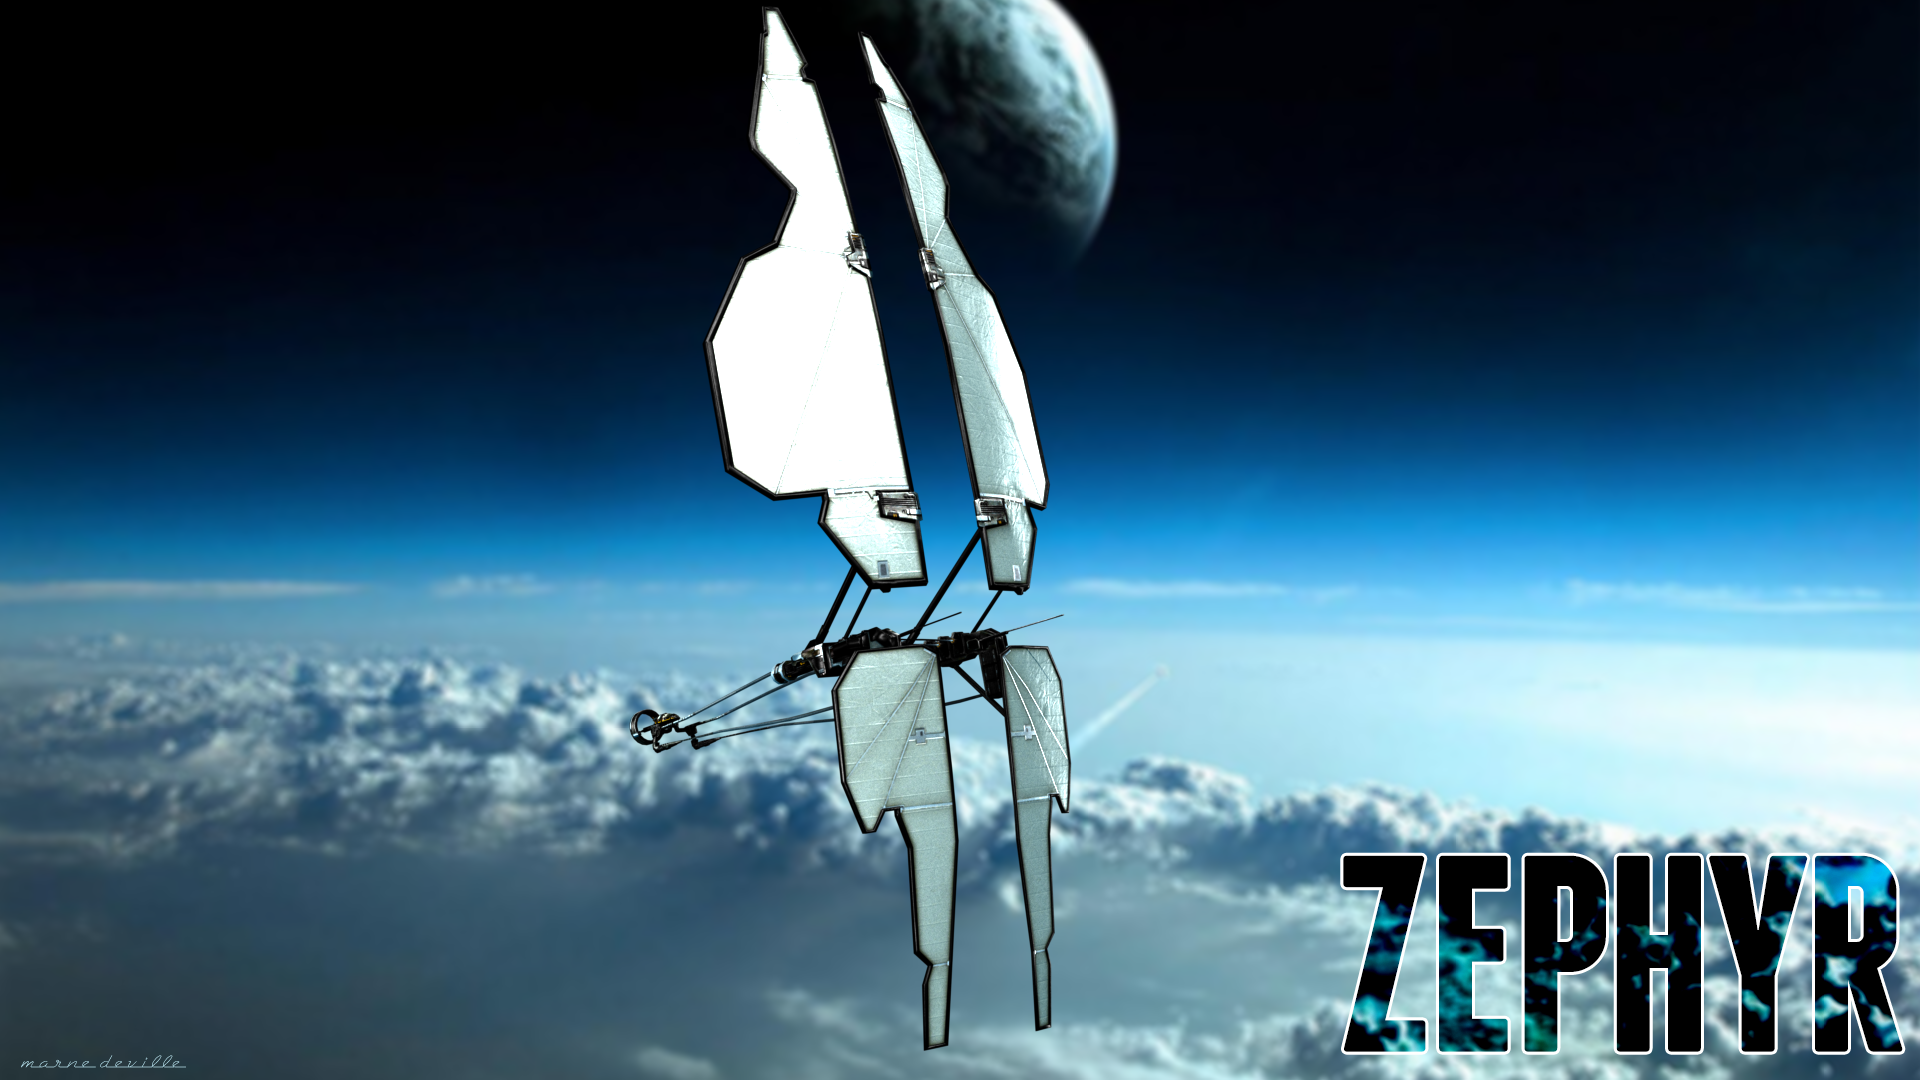 EVE Online - Zephyr